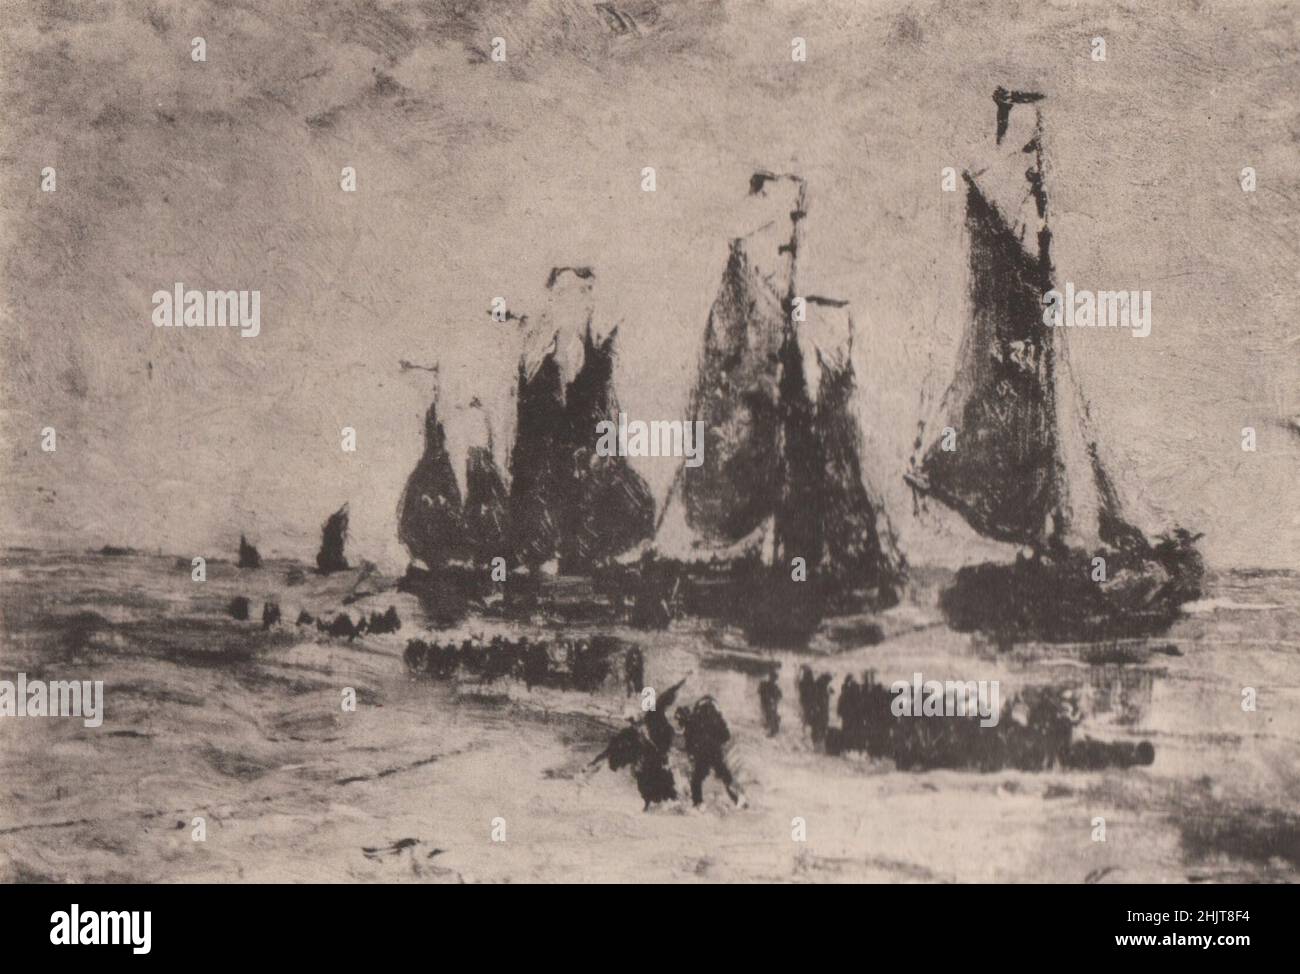 Giappone terremoto 1923: Uno scenario di mare in Belgio - una delle immagini esposte alla mostra d'arte belga di Tokyo Foto Stock